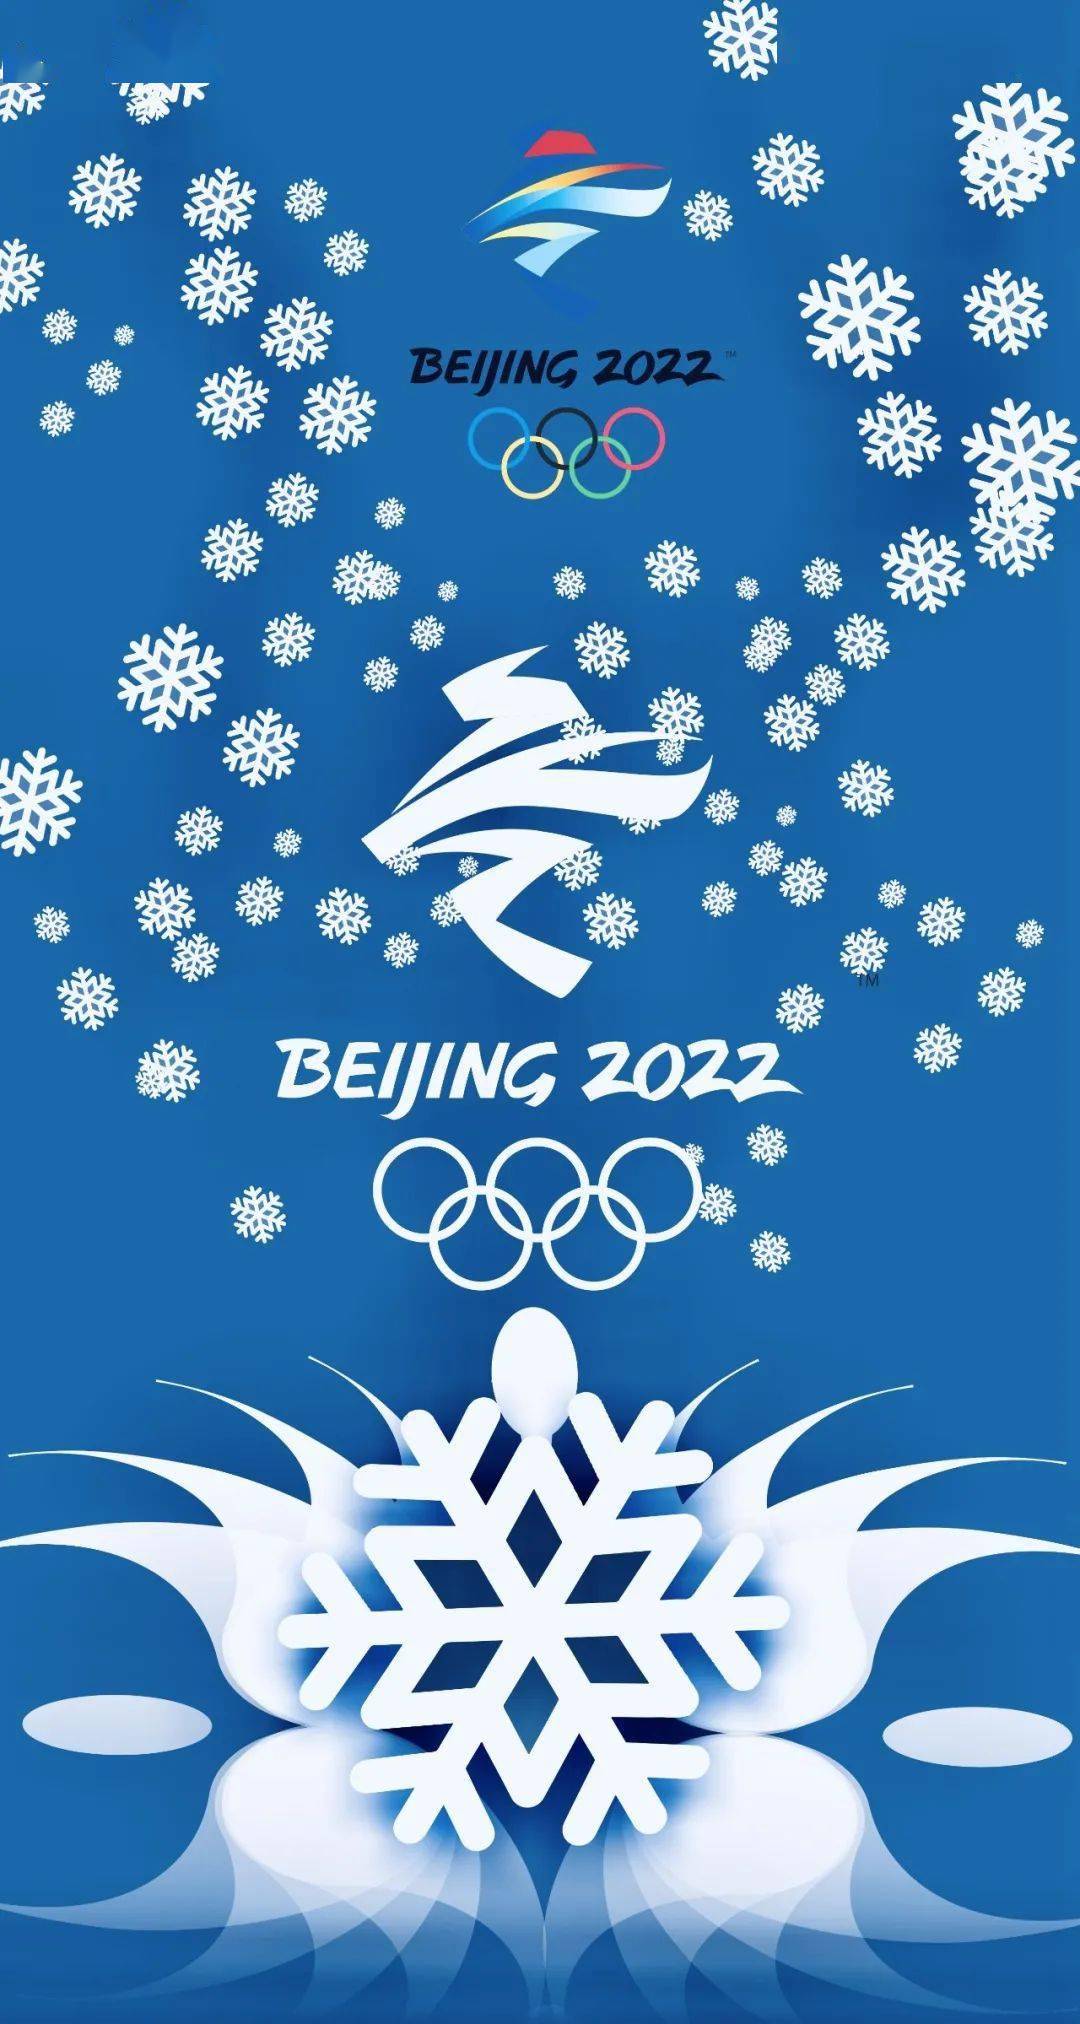 2022冬奥会祝福语简短图片